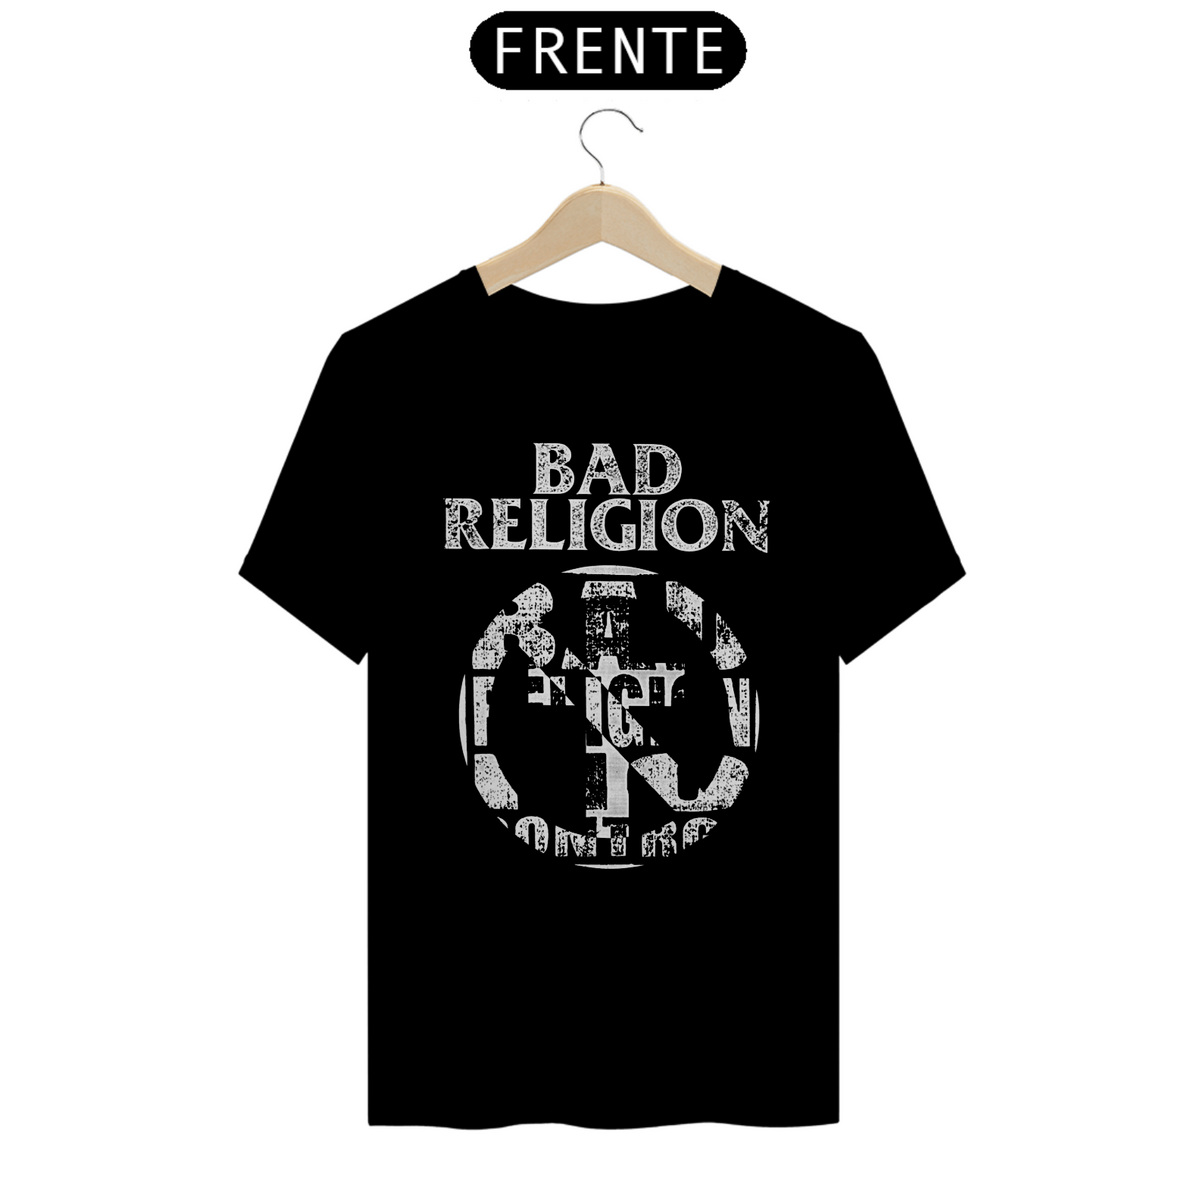 Nome do produto: Bad Religion